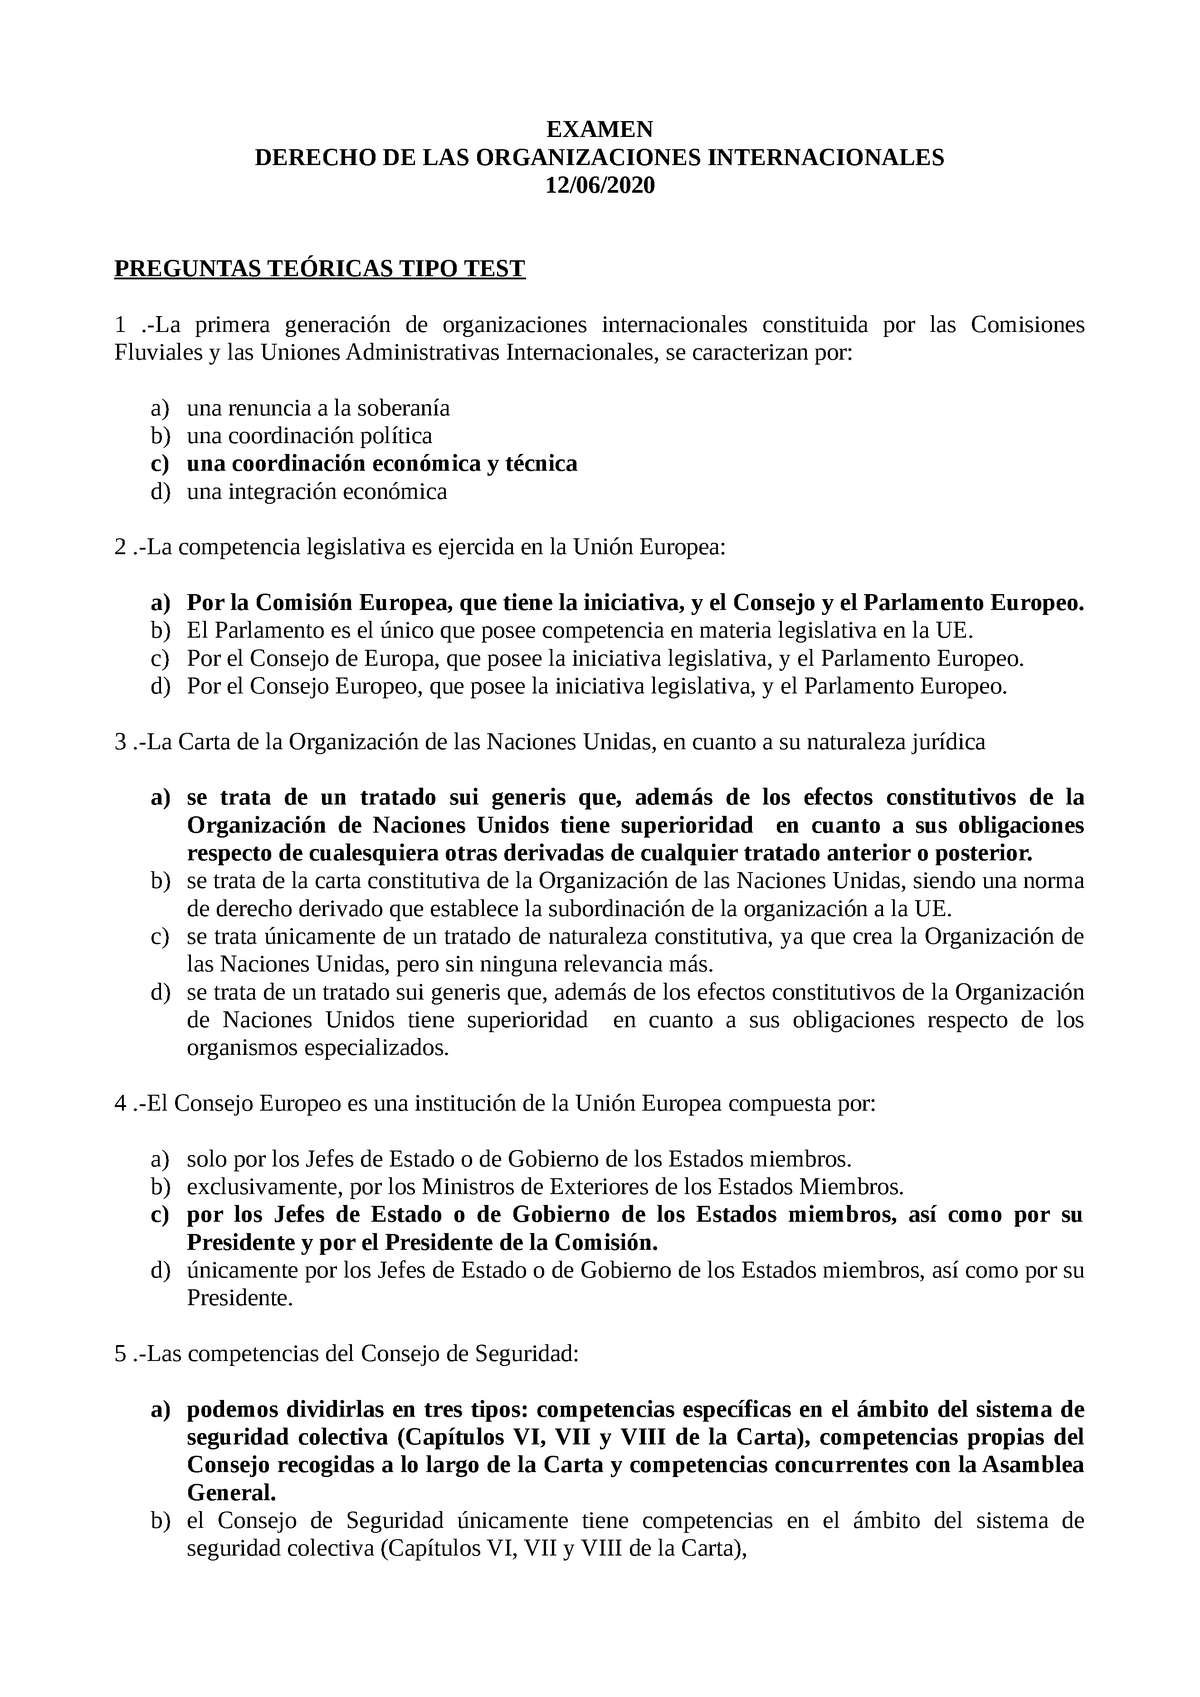 Examen Derecho OOII. Preguntas EXAMEN DERECHO DE LAS ORGANIZACIONES INTERNACIONALES - Studocu